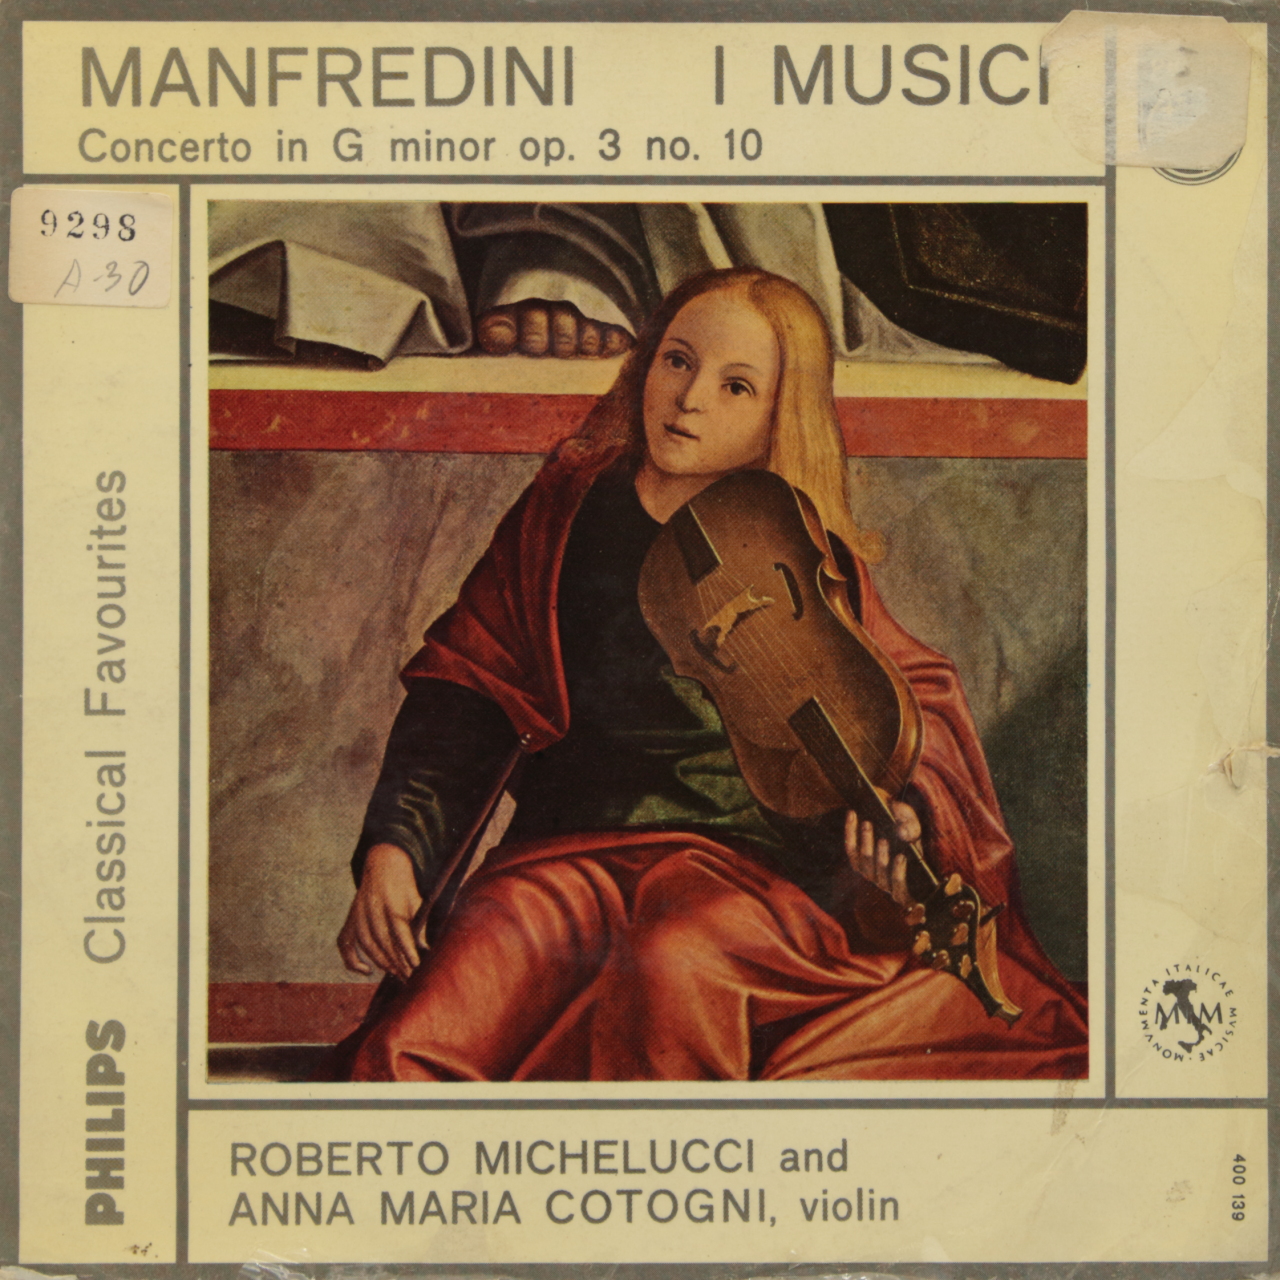 Manfredini: Concerto in G minor op. 3 no. 10